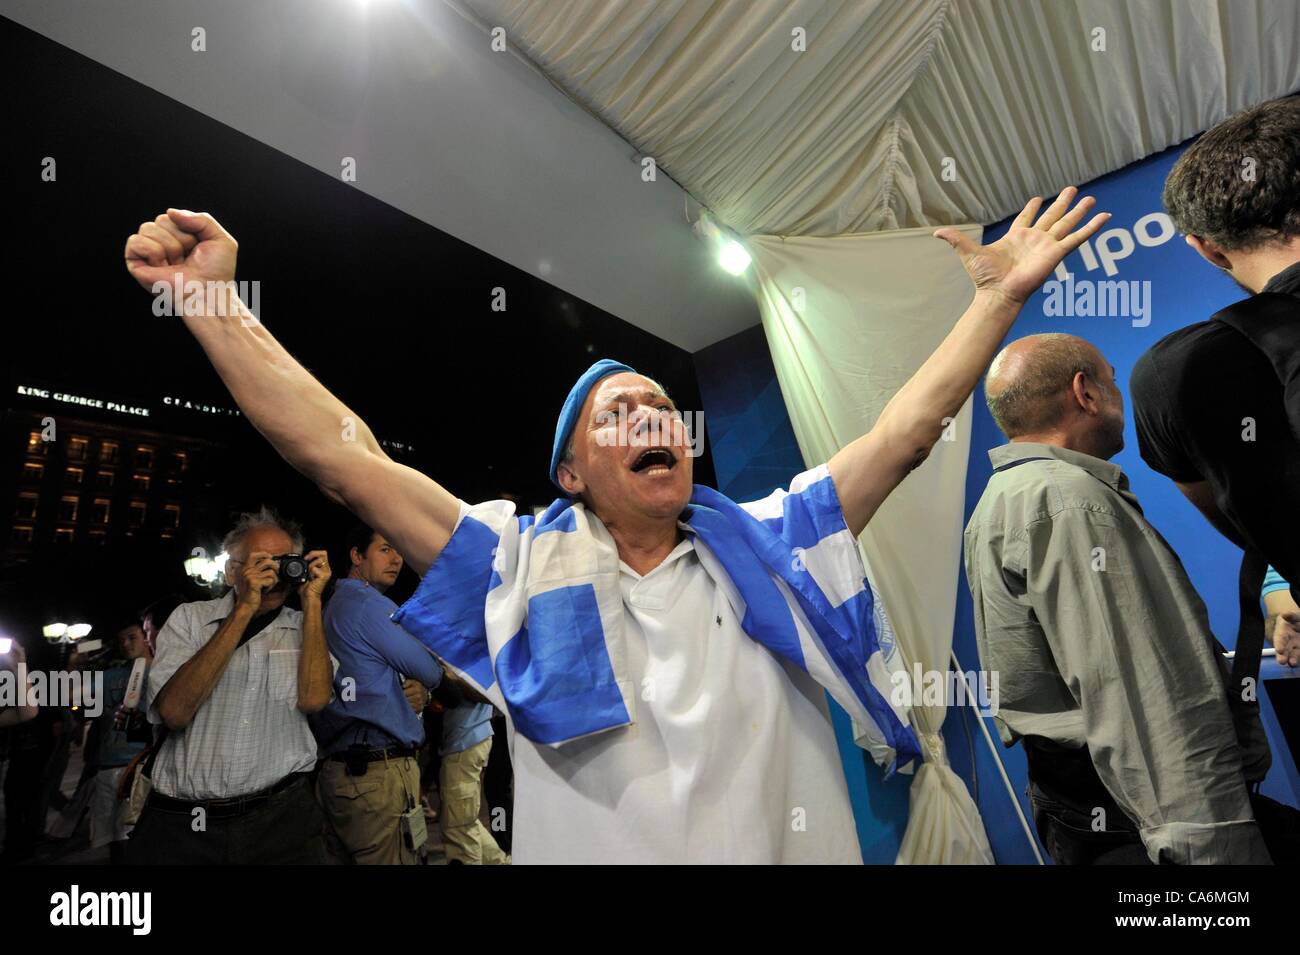 17 juin 2012 Grèce Athènes - élections en Grèce - des partisans du parti Nouvelle Démocratie et de célébrer les résultats de l'élection. Les résultats des élections ont montré la nouvelle démocratie gagner contre parti de gauche SYRIZA. Banque D'Images